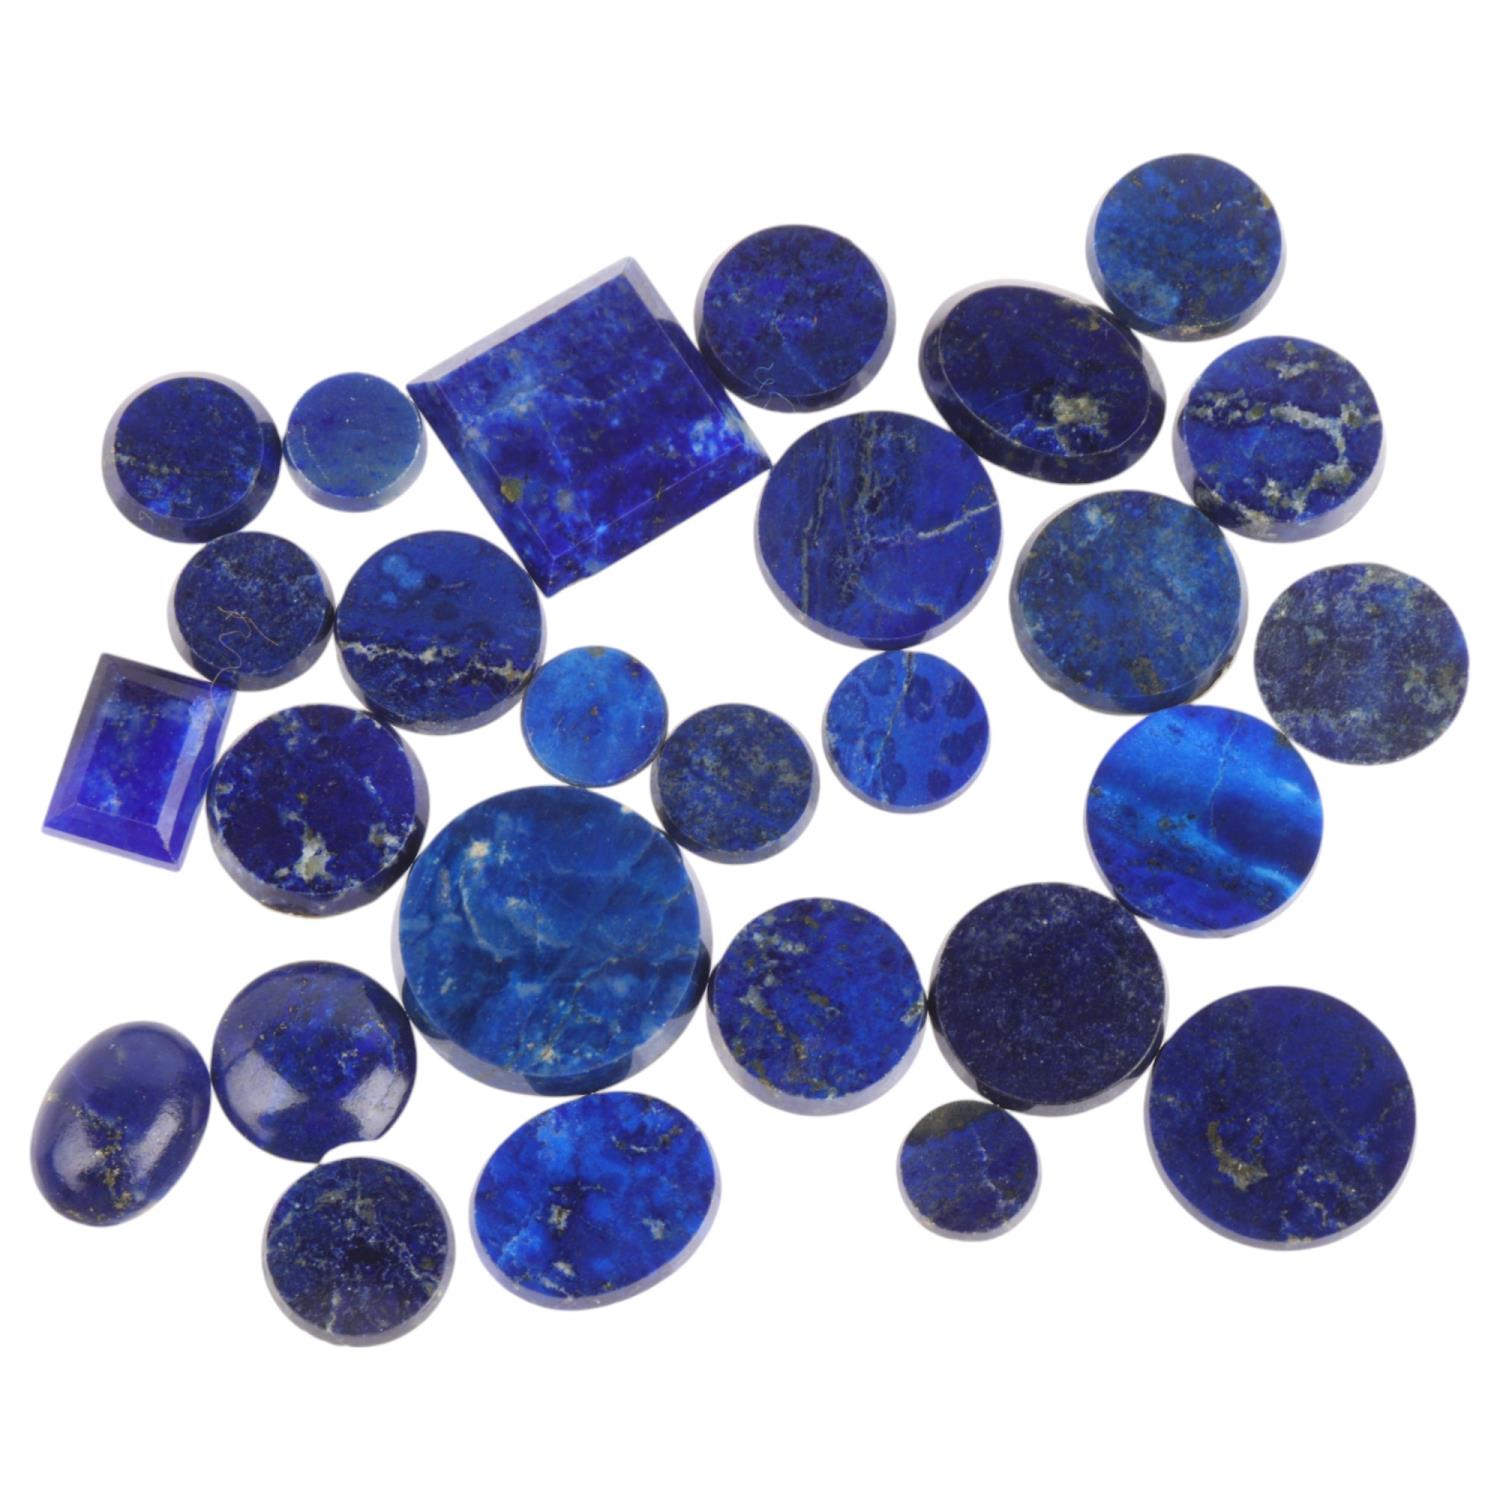 25 various lapis lazuli tablets, largest circle diameter 23.4mm A few have faint hairline cracks,